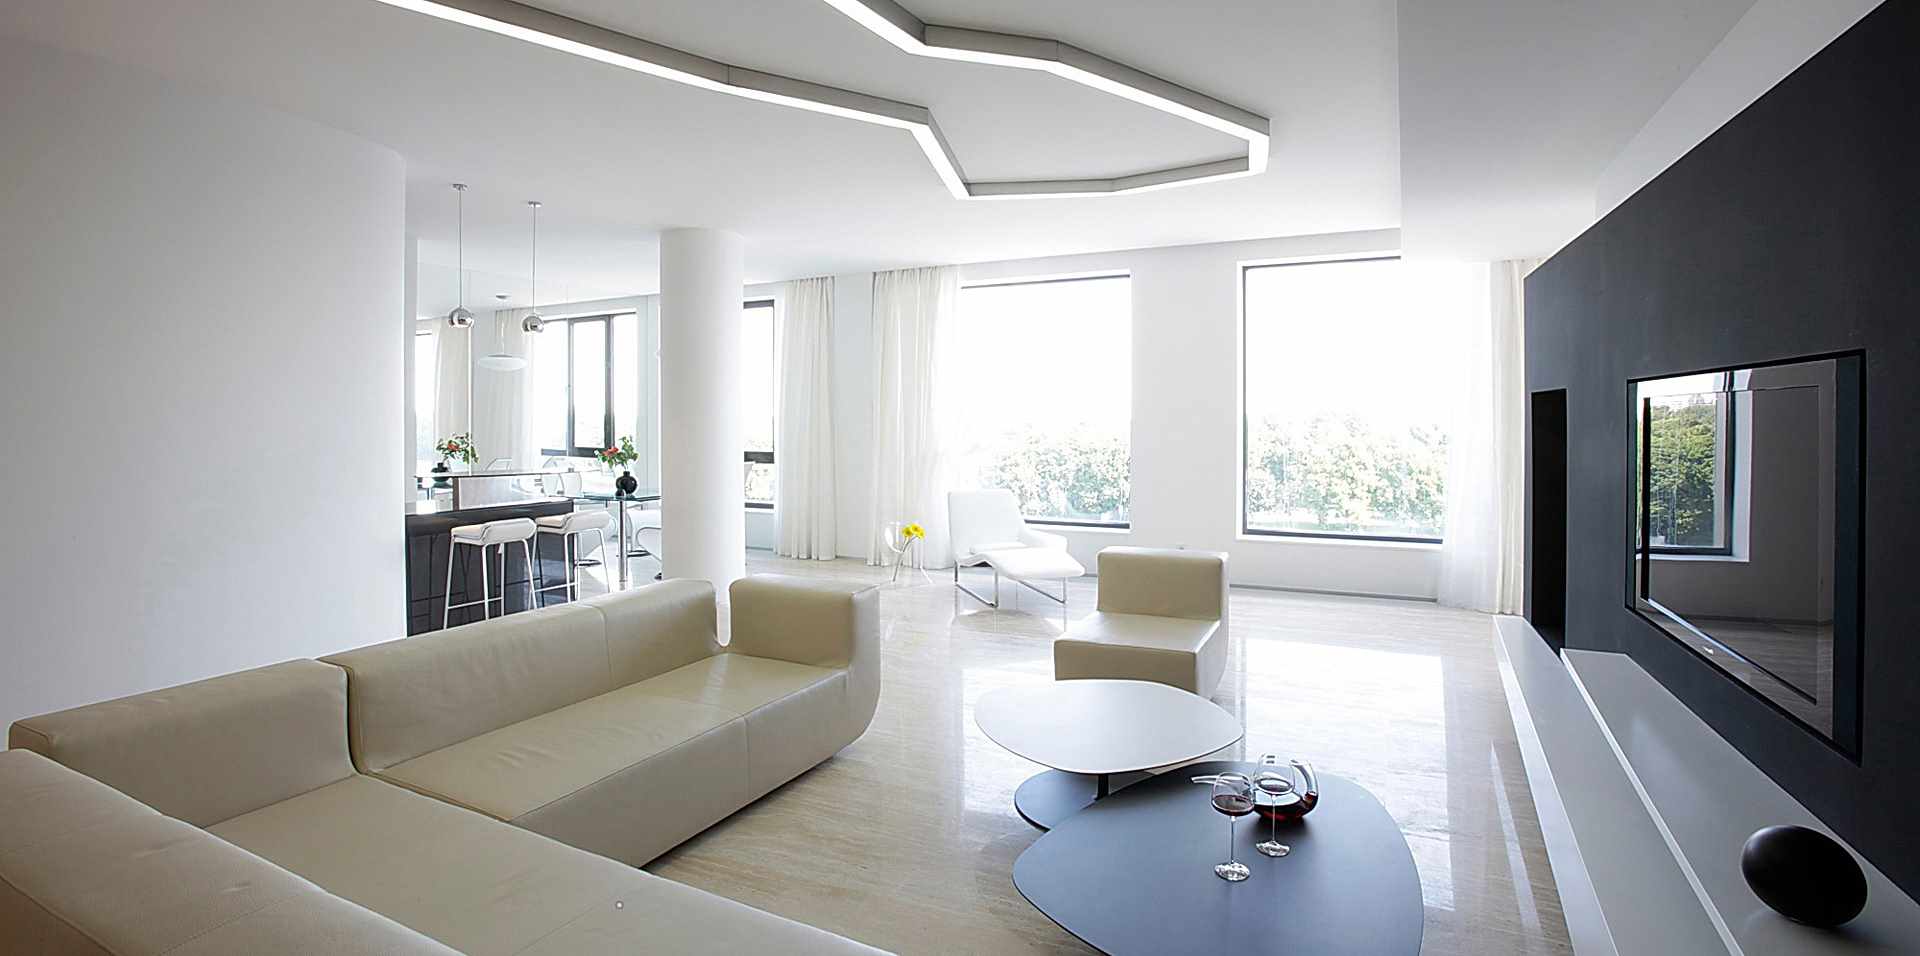 egy példa a nappali világos dekorációjának alkalmazására a minimalizmus stílusában